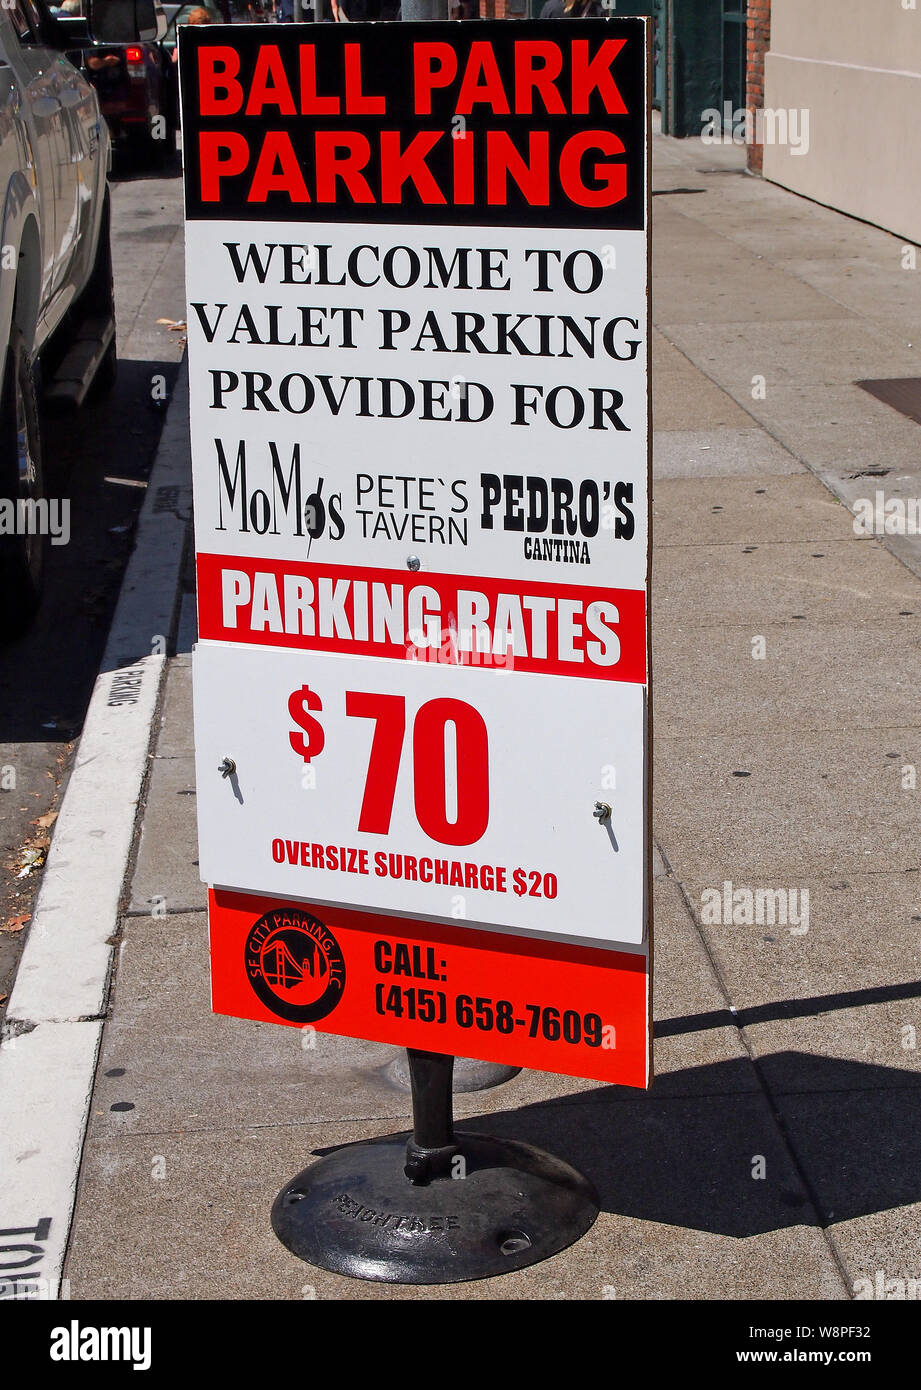 Ball Park tasas de estacionamiento, $70, $20 de recargo extra signo en la acera de San Francisco, California Foto de stock